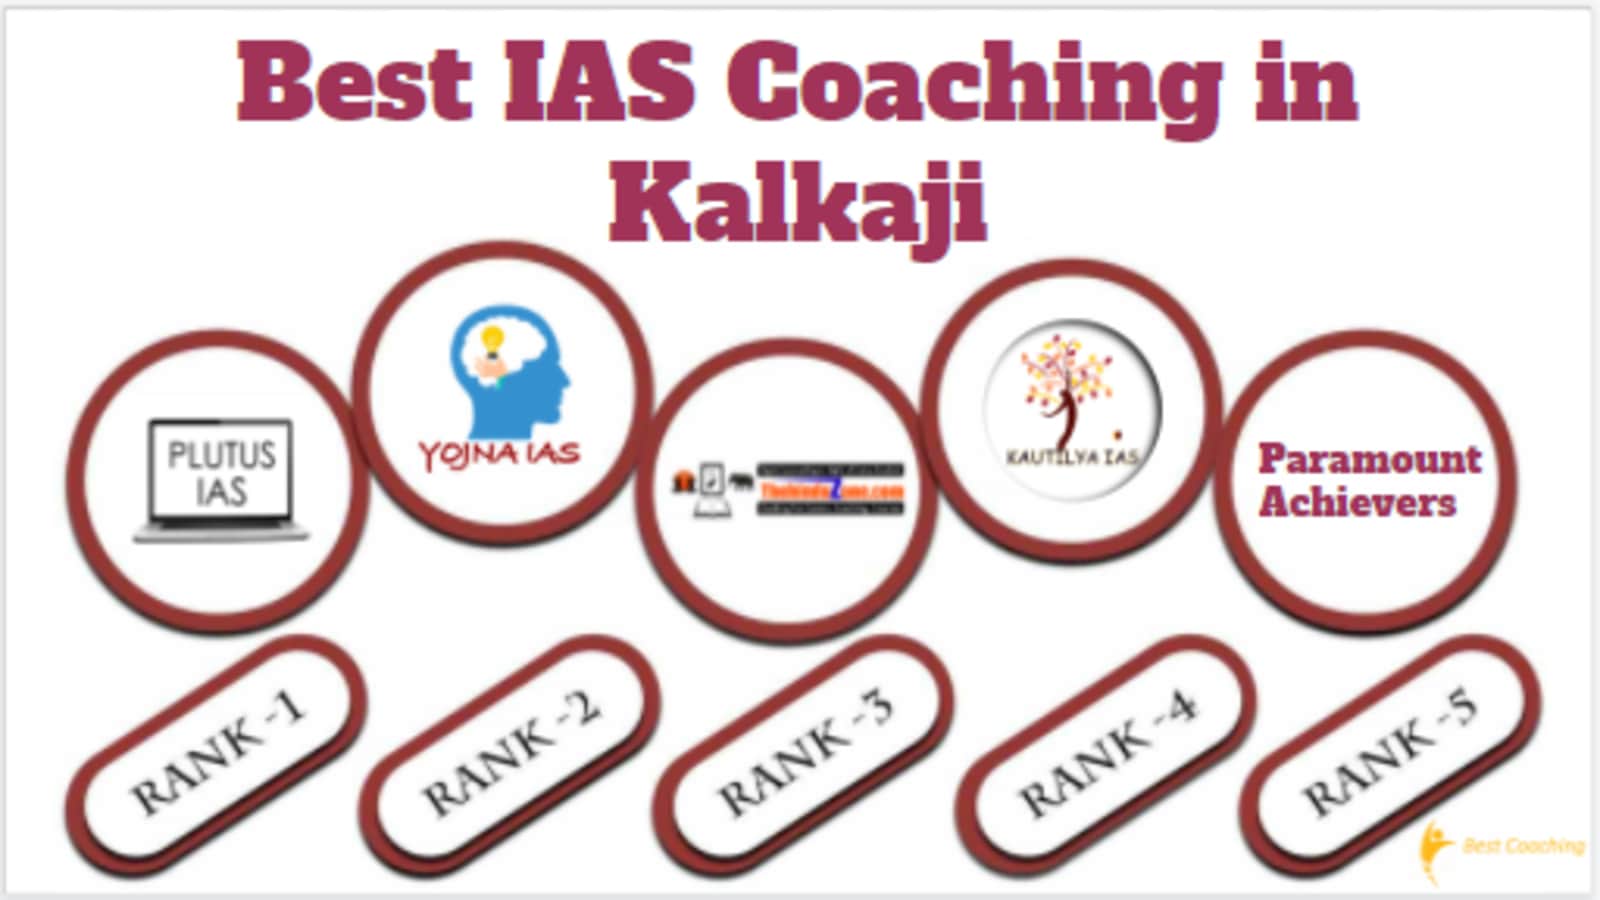 Best IAS Coaching in Kalkaji